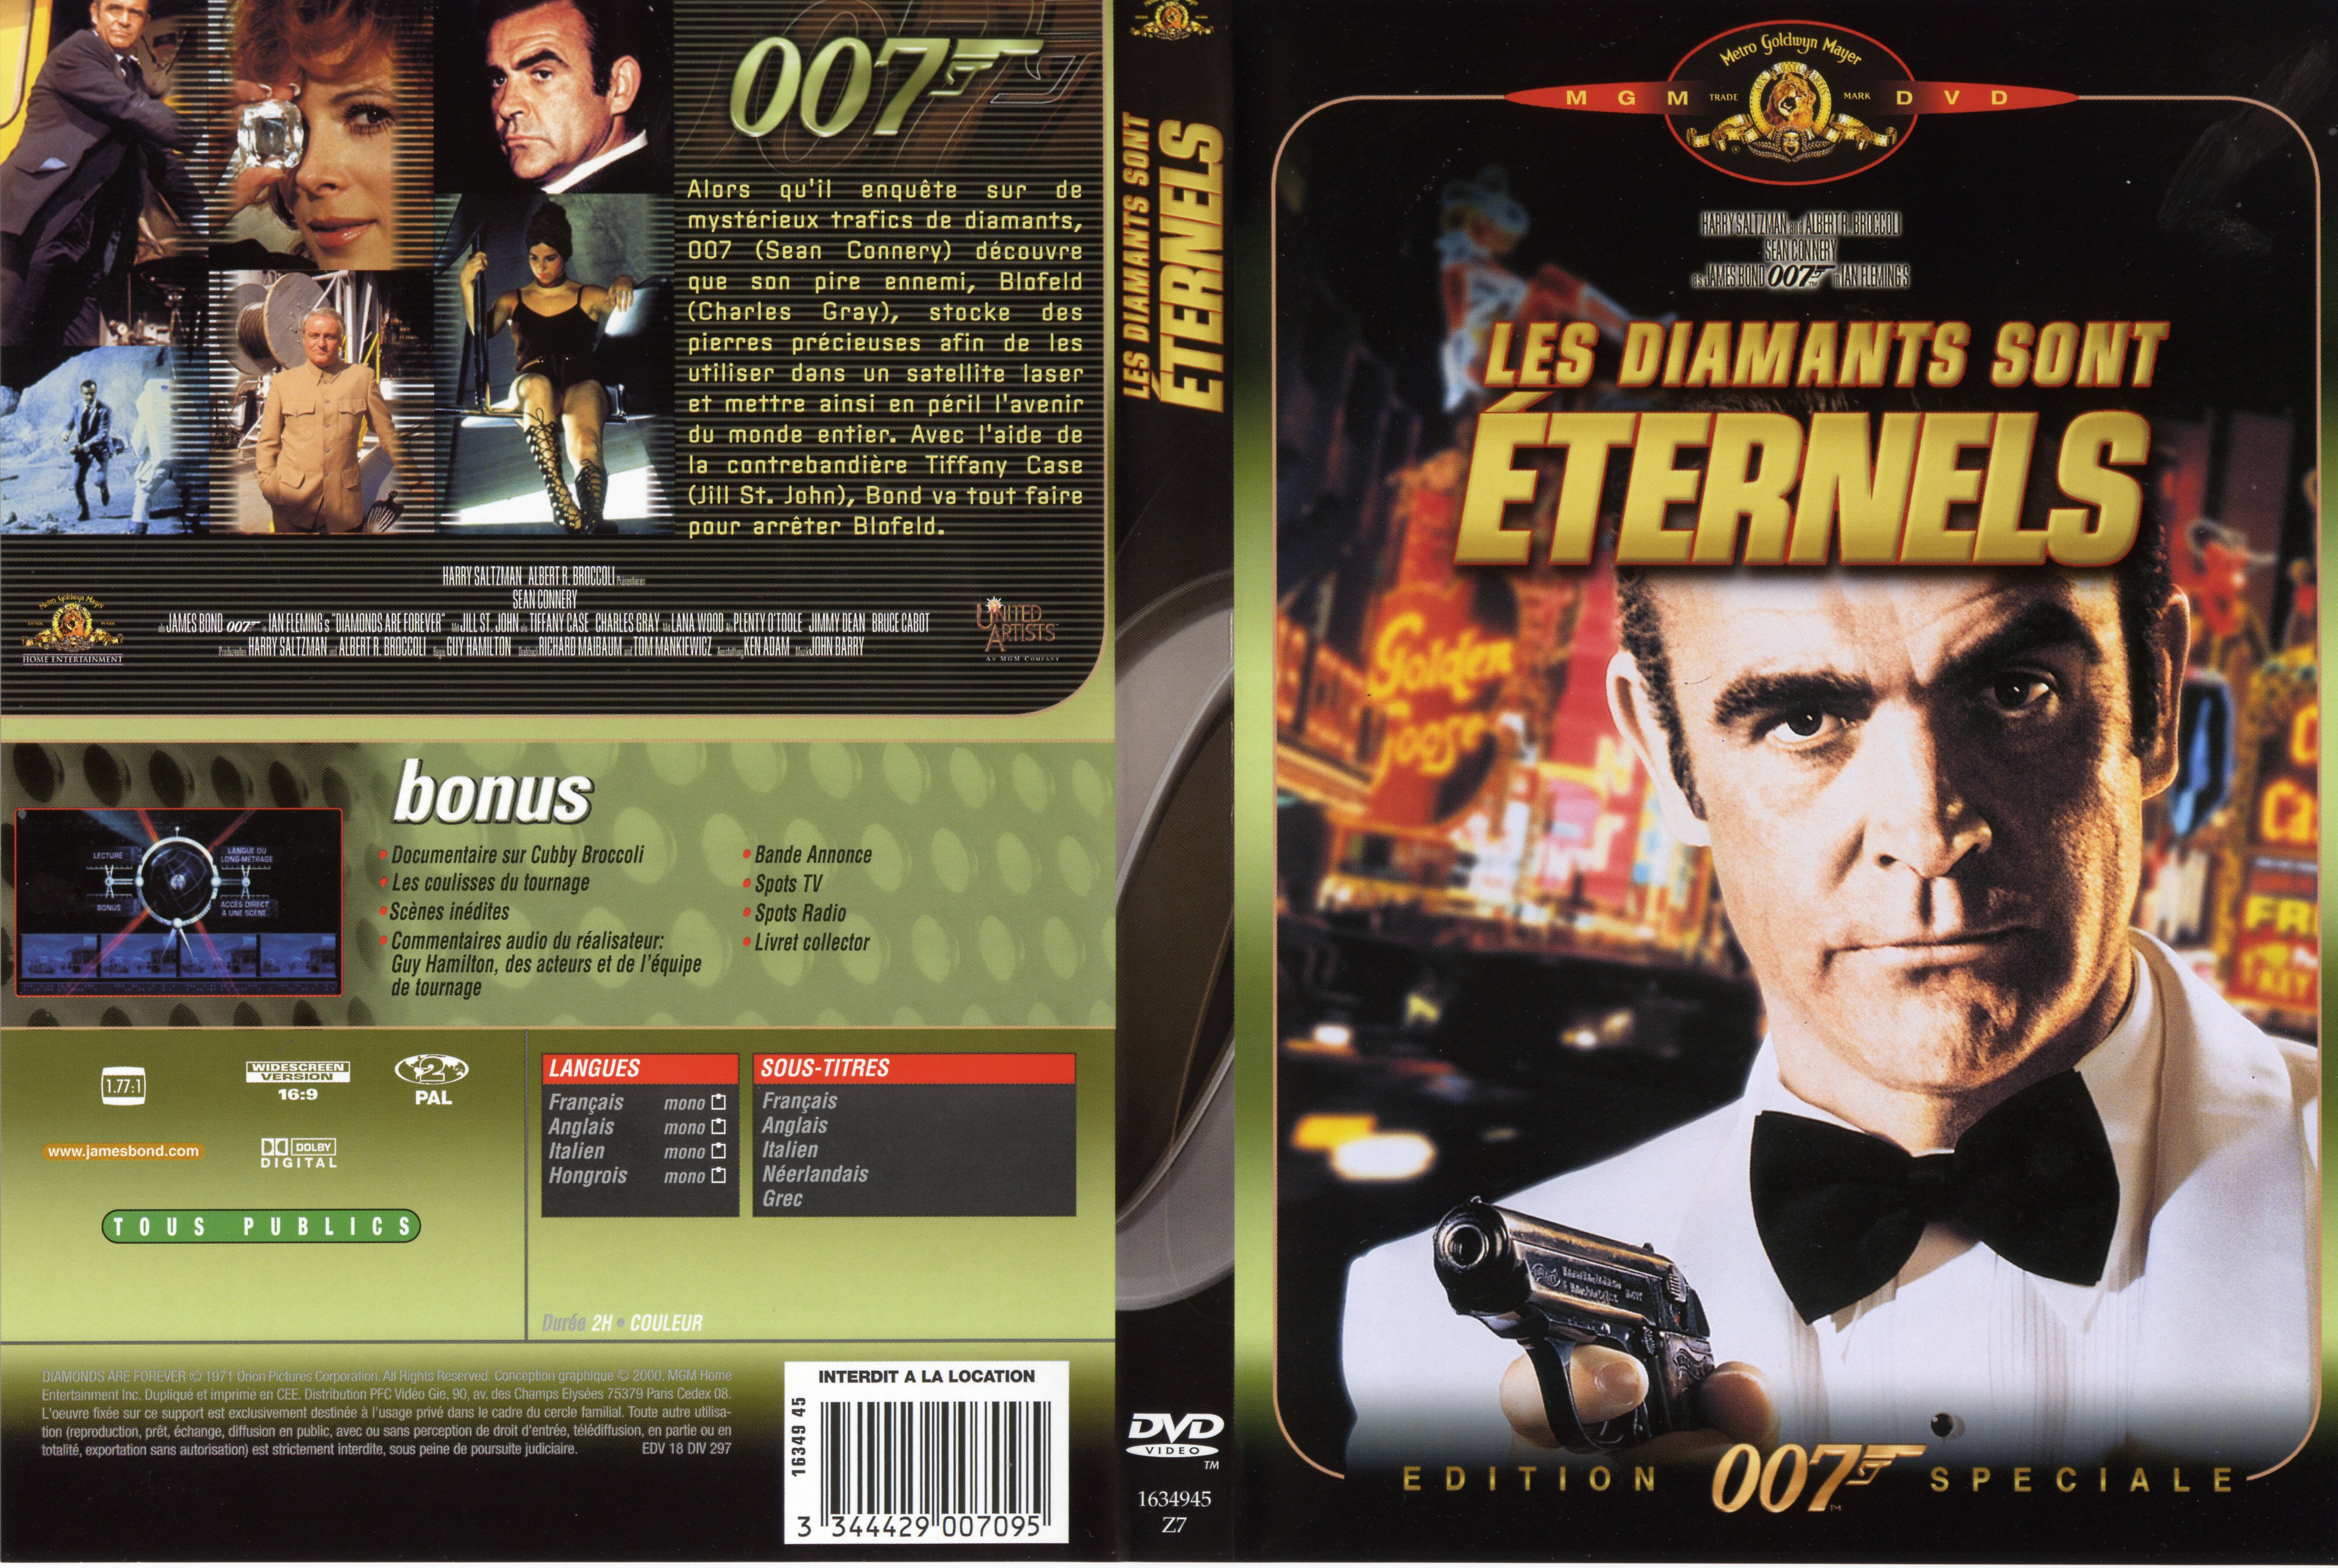 Jaquette DVD James bond 007 Les diamants sont ternels